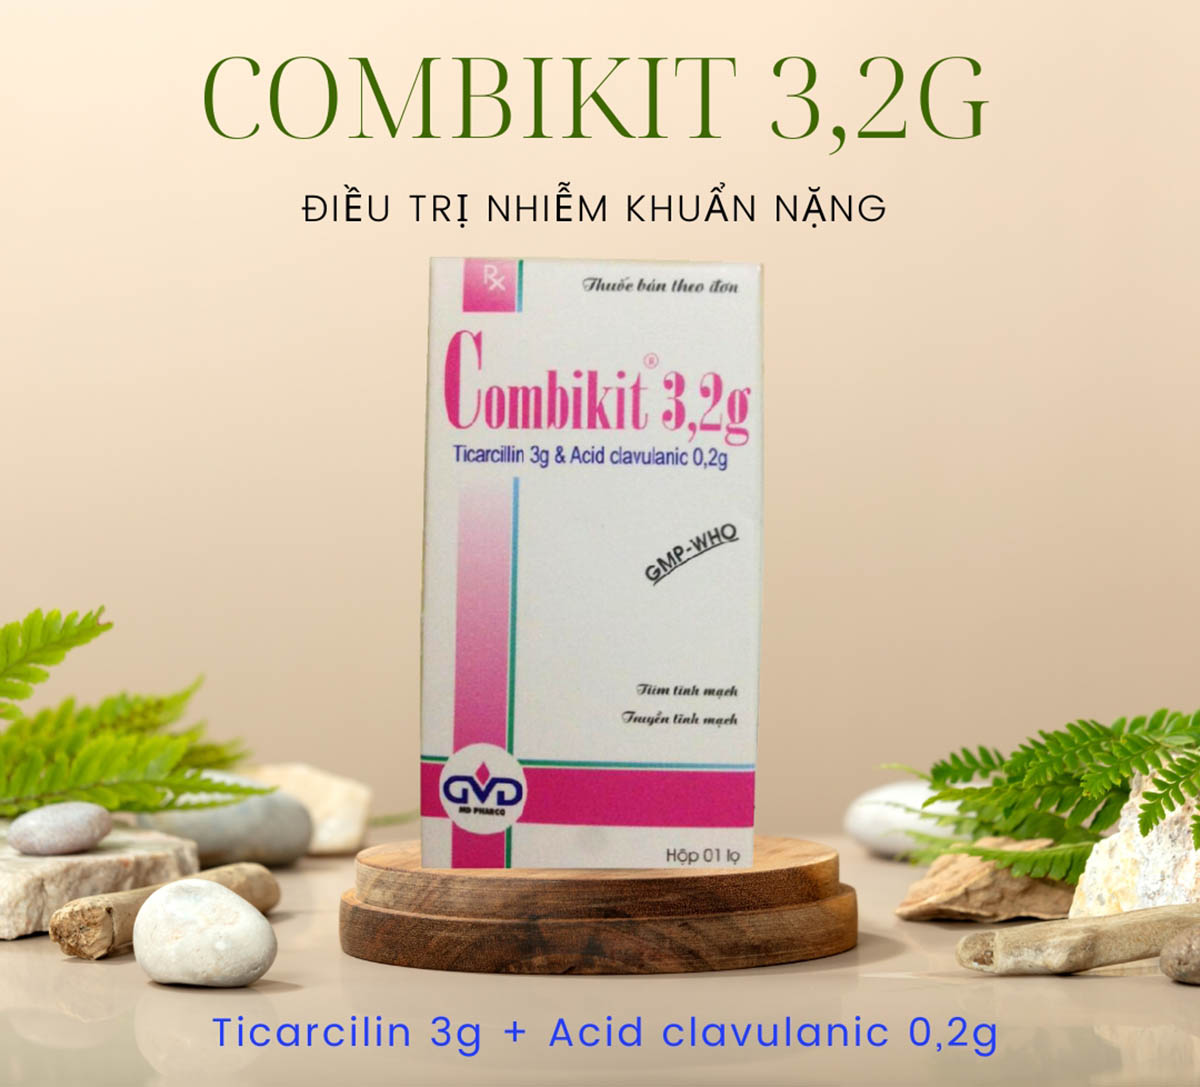 Thuốc Combikit 3,2g - Điều trị nhiễm khuẩn